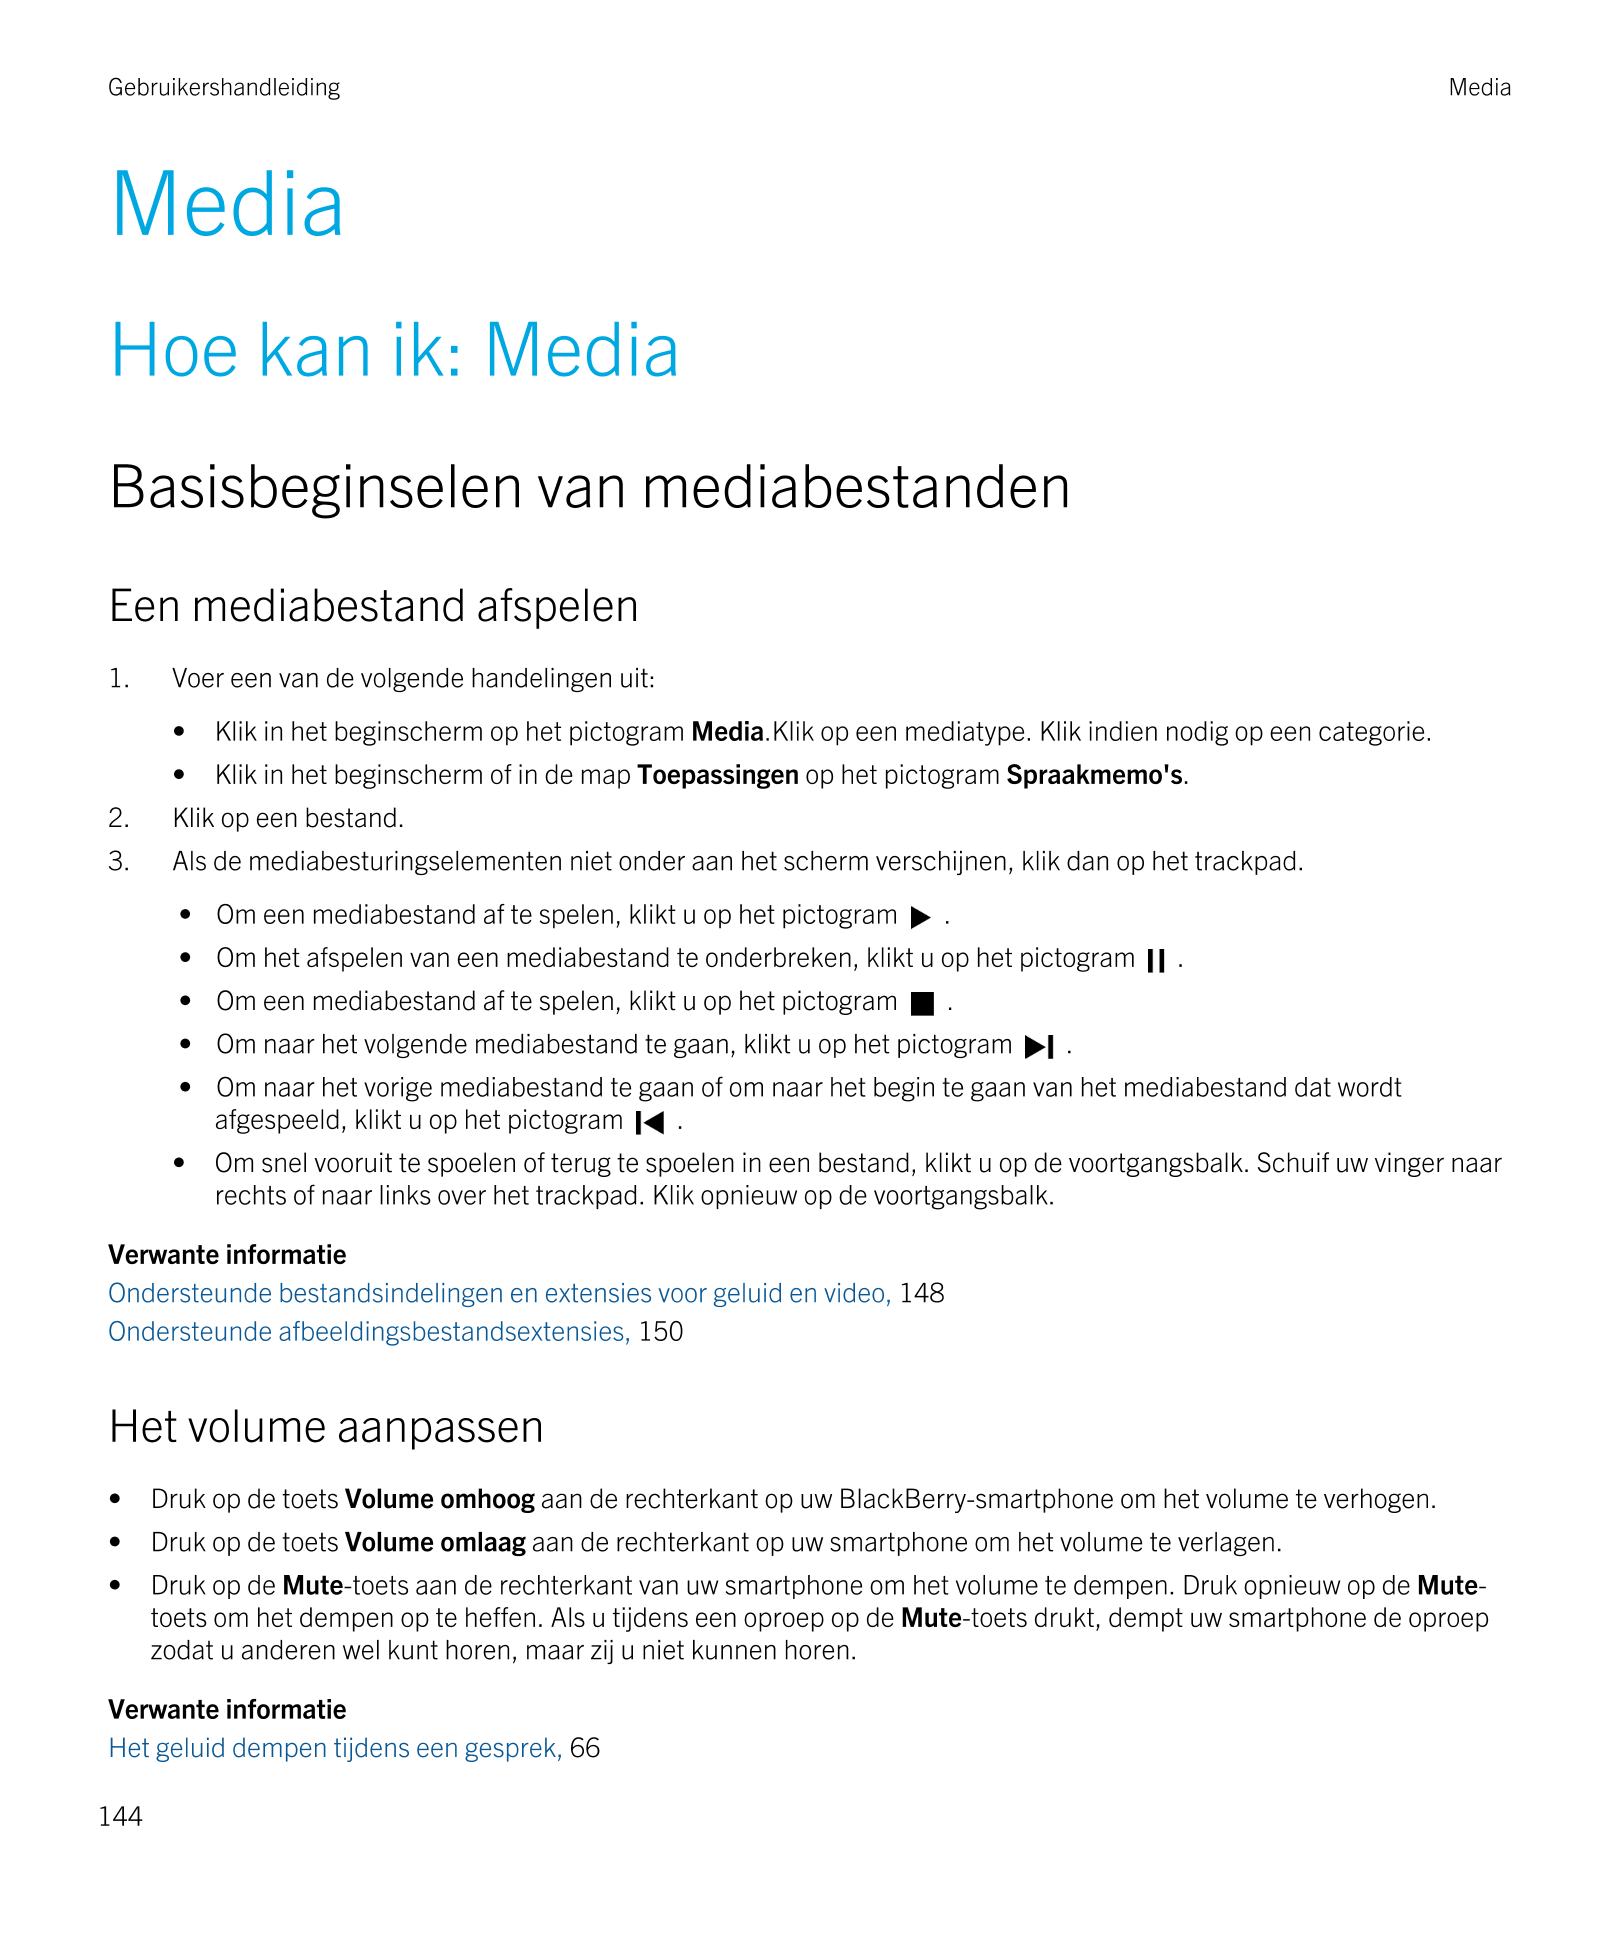 Gebruikershandleiding Media
Media
Hoe kan ik: Media
Basisbeginselen van mediabestanden
Een mediabestand afspelen
1. Voer een van